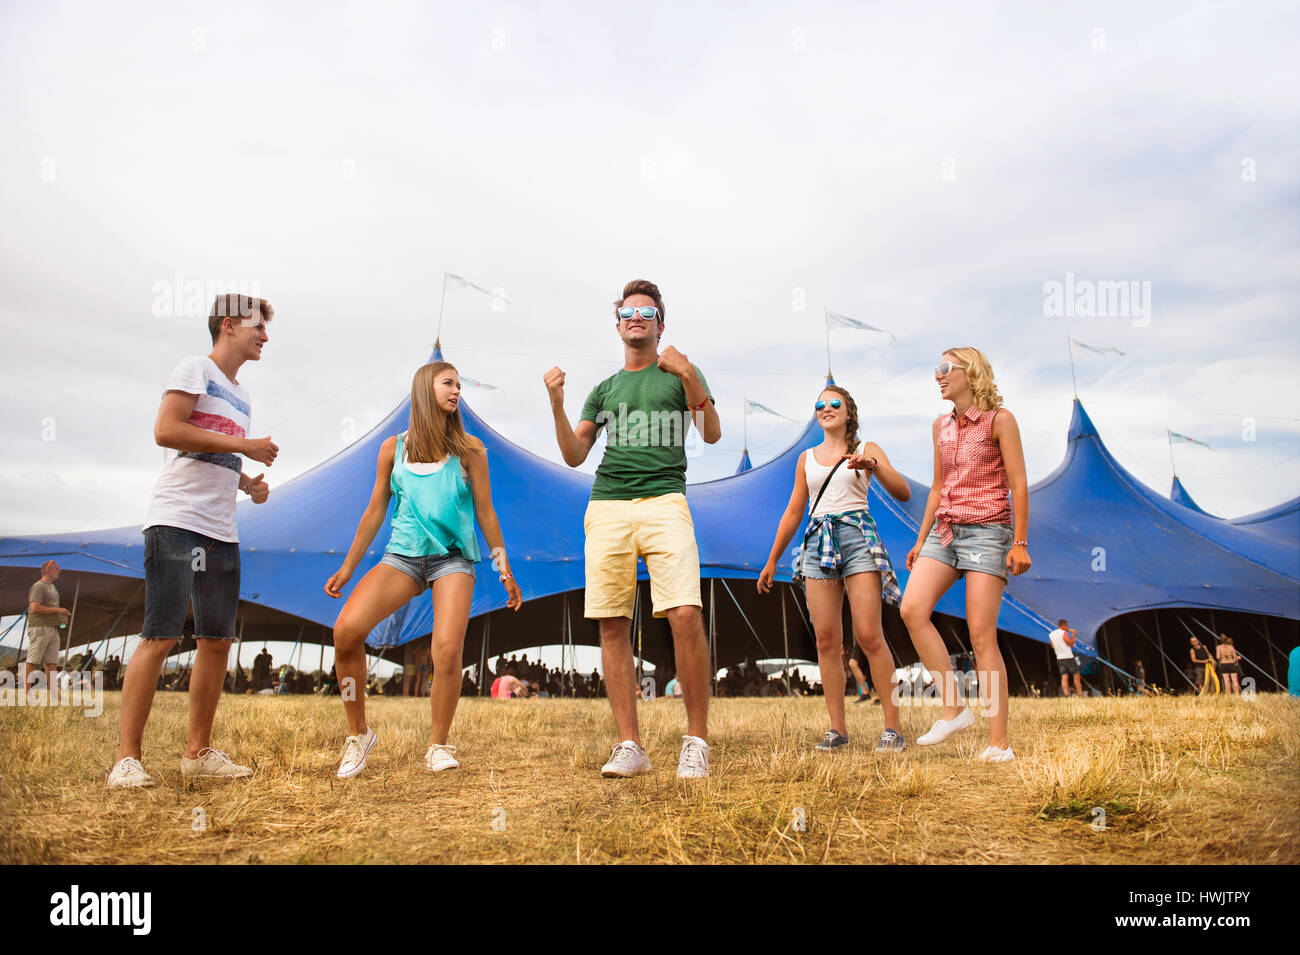 Gruppe von Teenager-Jungen und Mädchen im Sommer-Musikfestival, tanzen vor grossen Zelt, sonnigen Tag Stockfoto